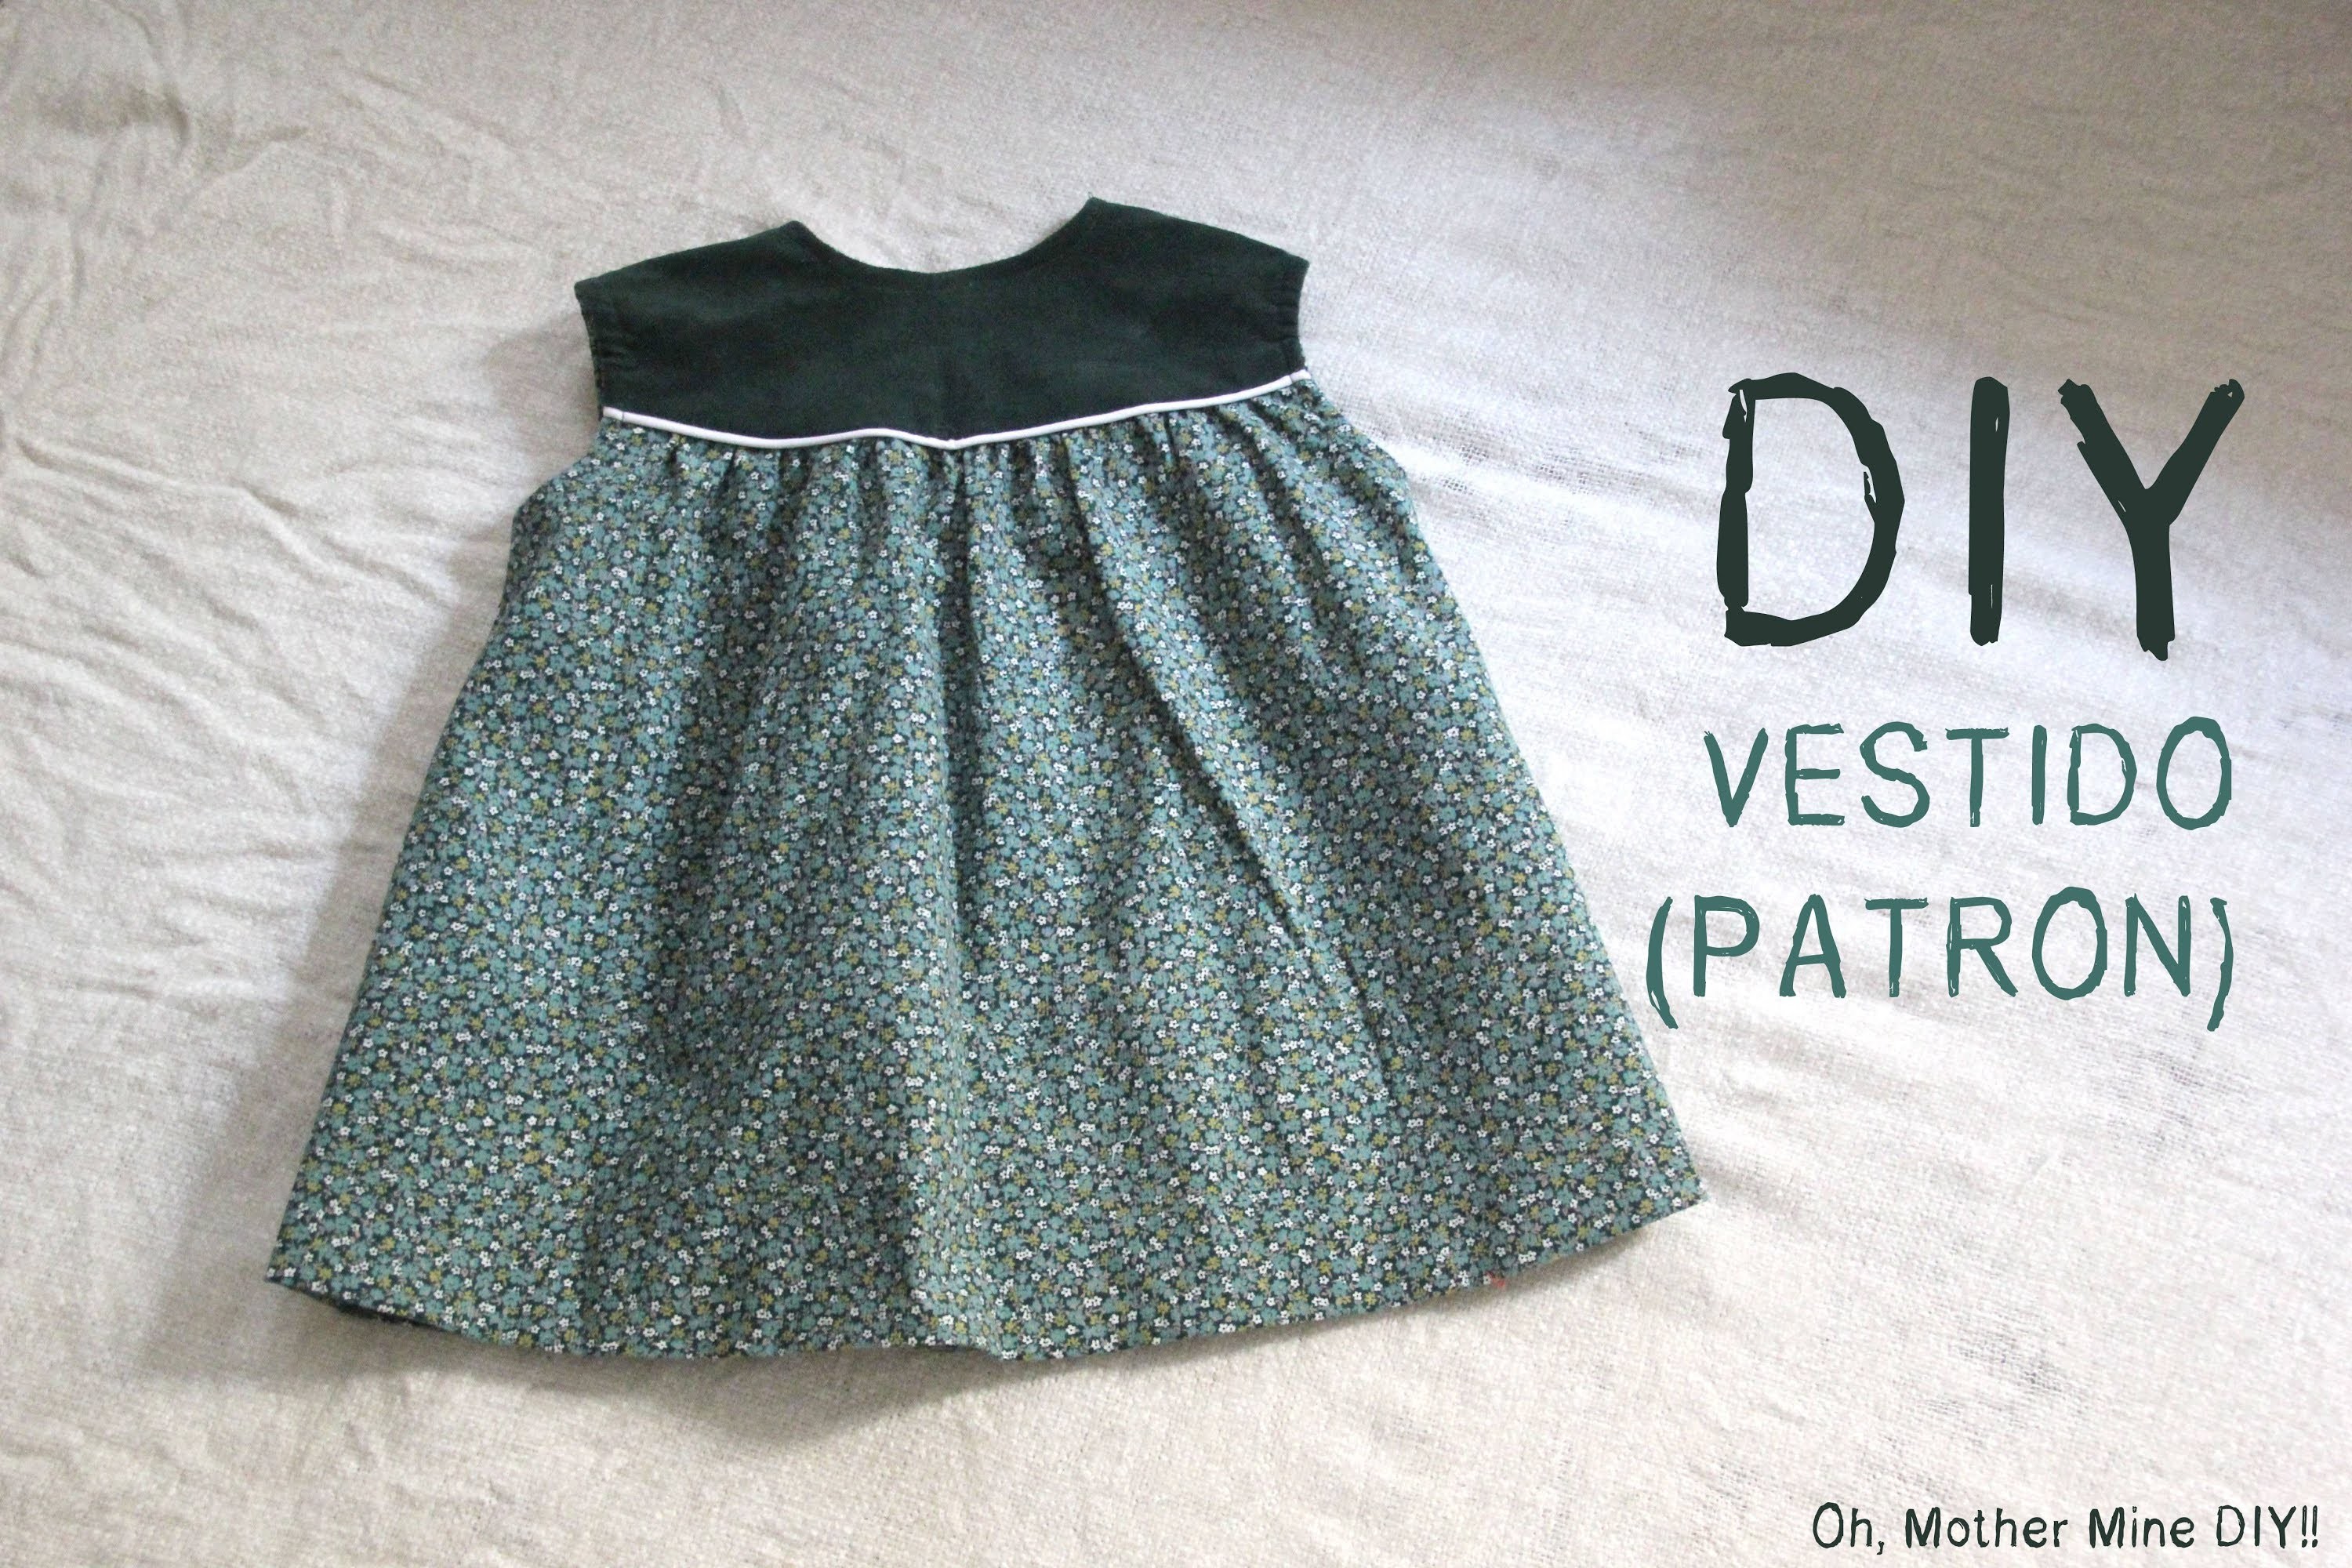 DIY Como hacer vestido de niña patrones incluidos talla 6 meses - 6 años